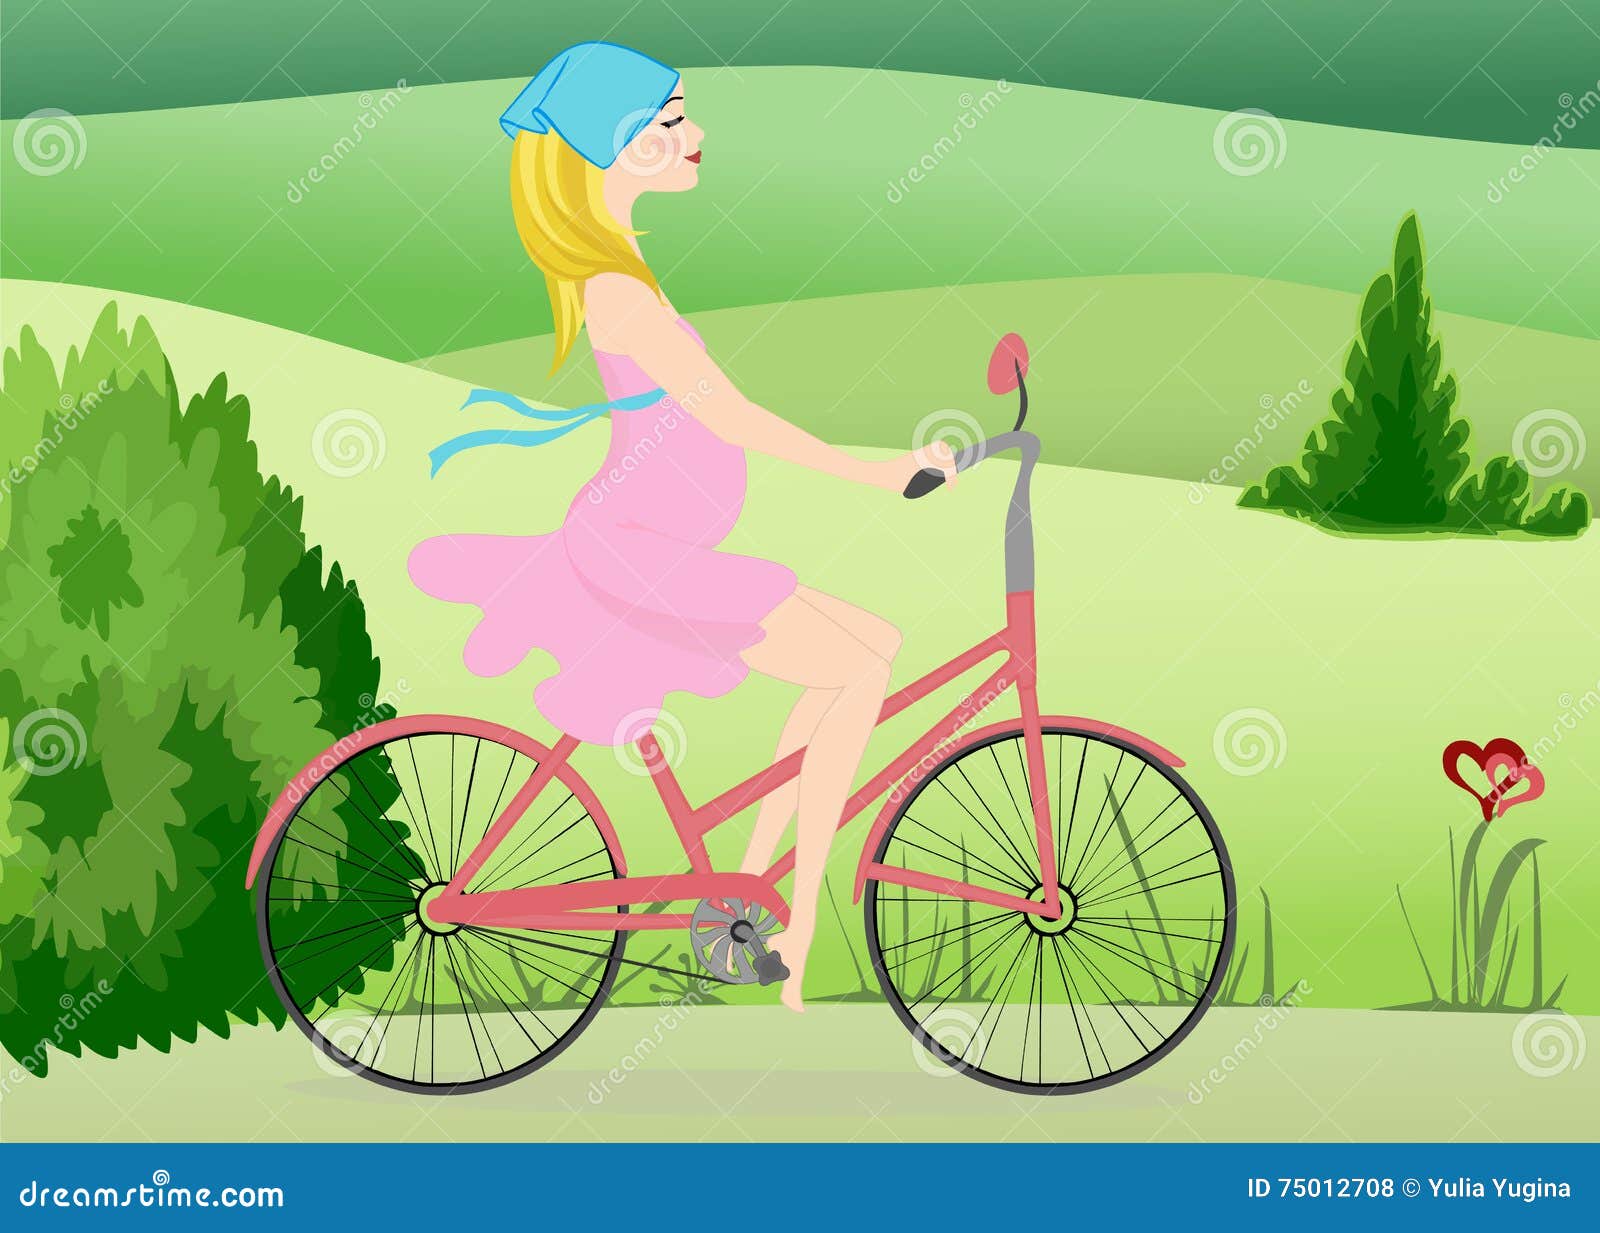 Ездить на велосипеде беременной. Беременные на велосипеде. На велосипеде через поле. Велосипед для беременных. Рисунки девочка на велосипеде едет по полю.